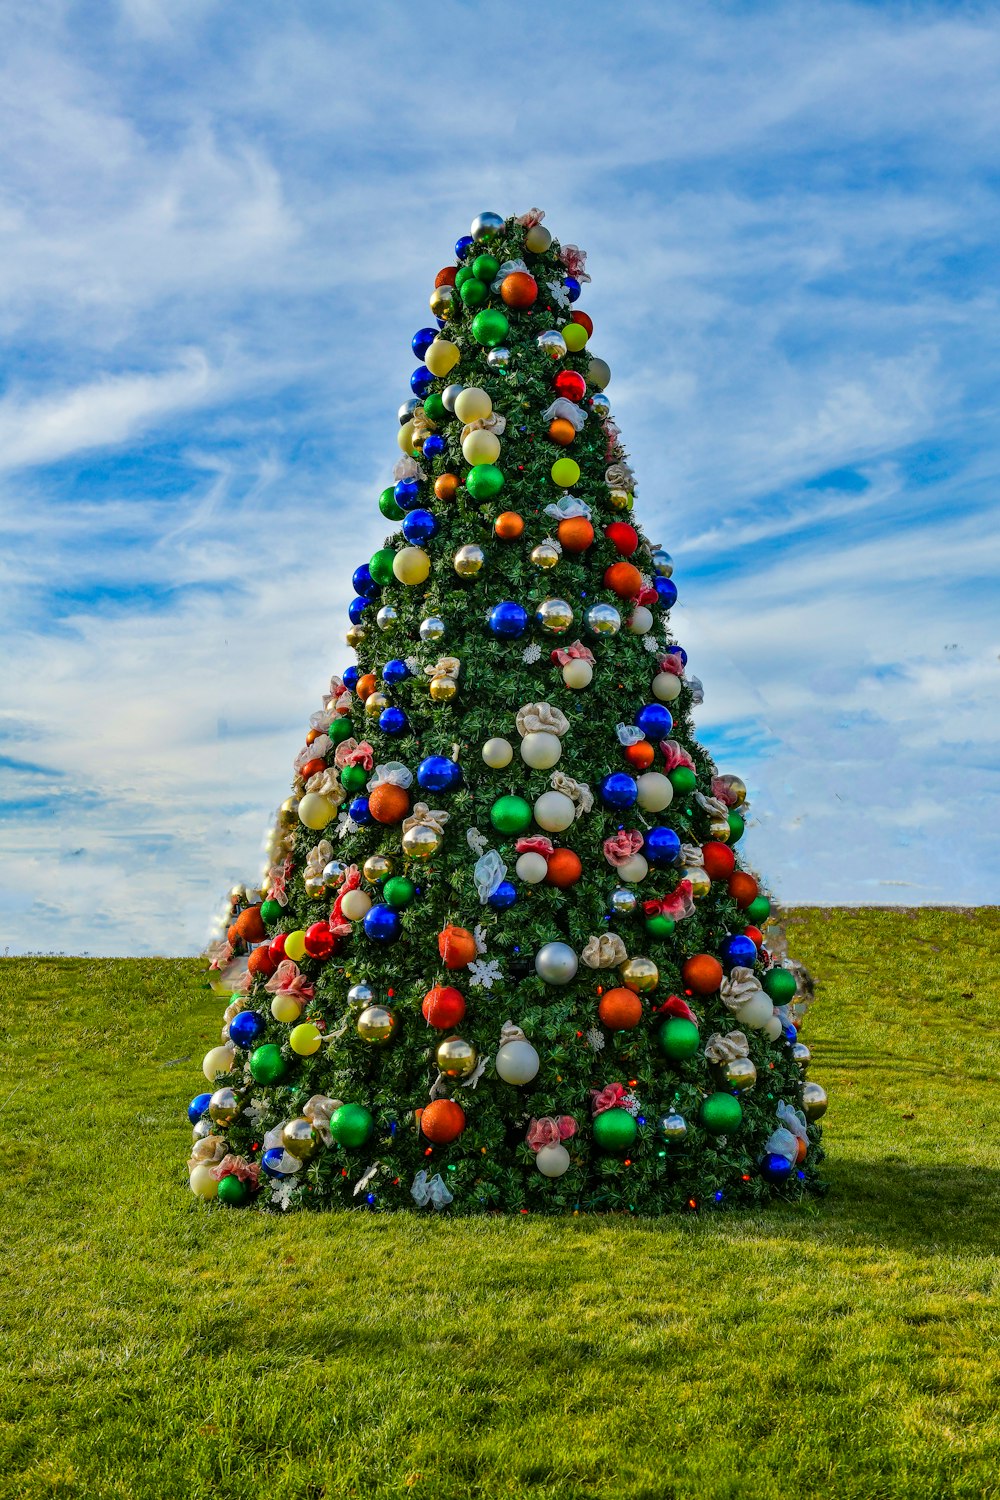 Uma grande árvore de Natal no meio de um campo